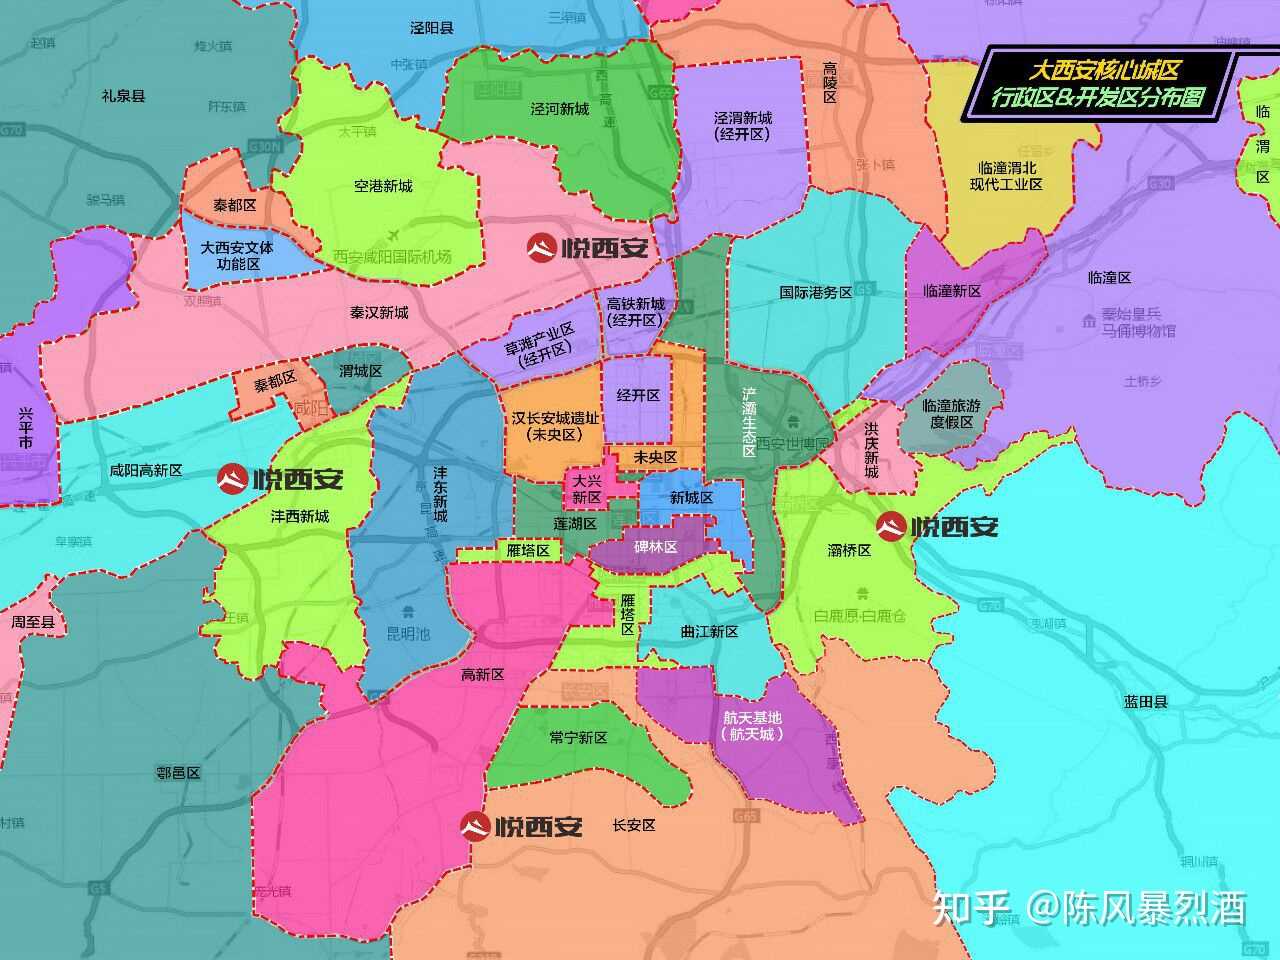 陈风暴烈酒 的想法: 西安和咸阳的行政区划和经济区划